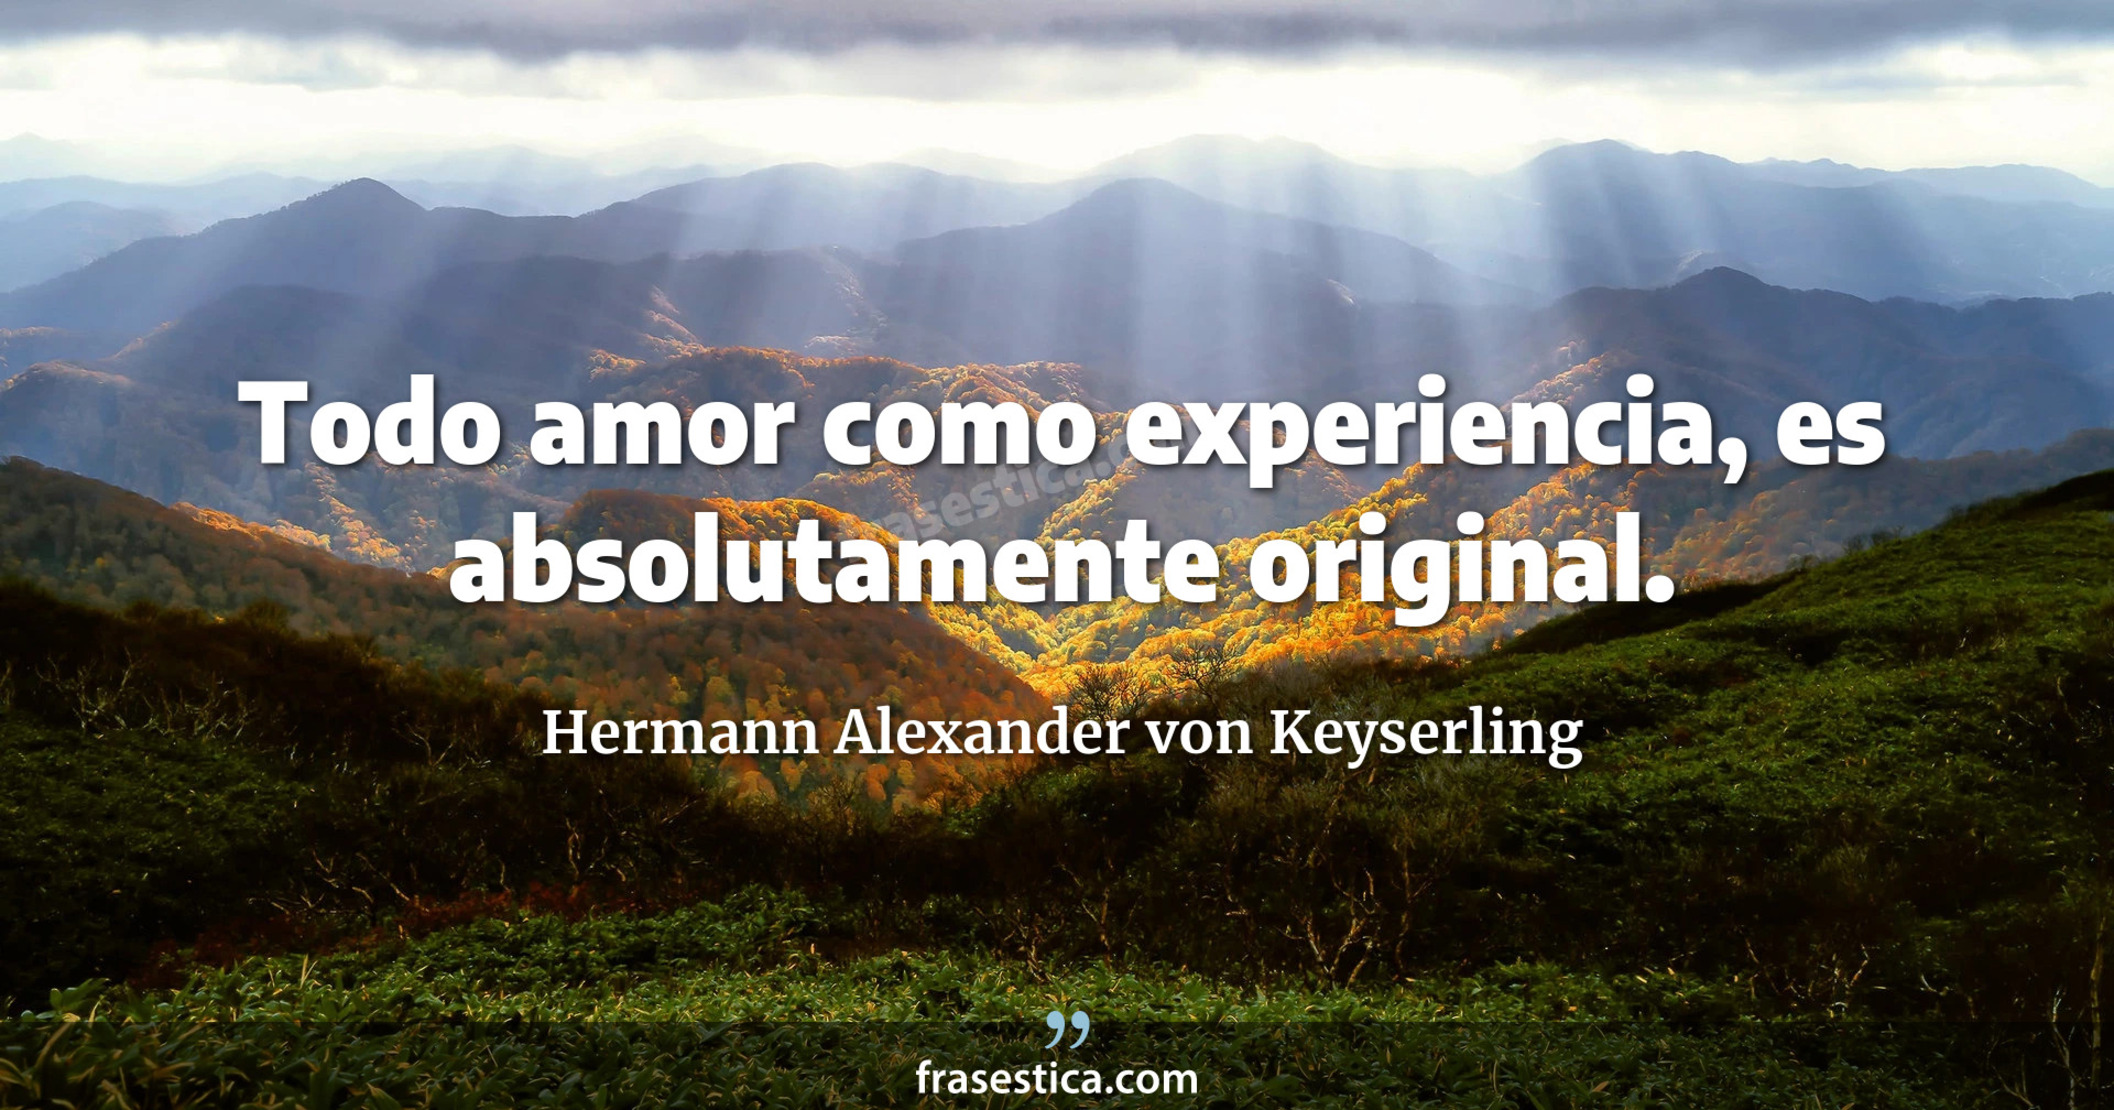 Todo amor como experiencia, es absolutamente original. - Hermann Alexander von Keyserling